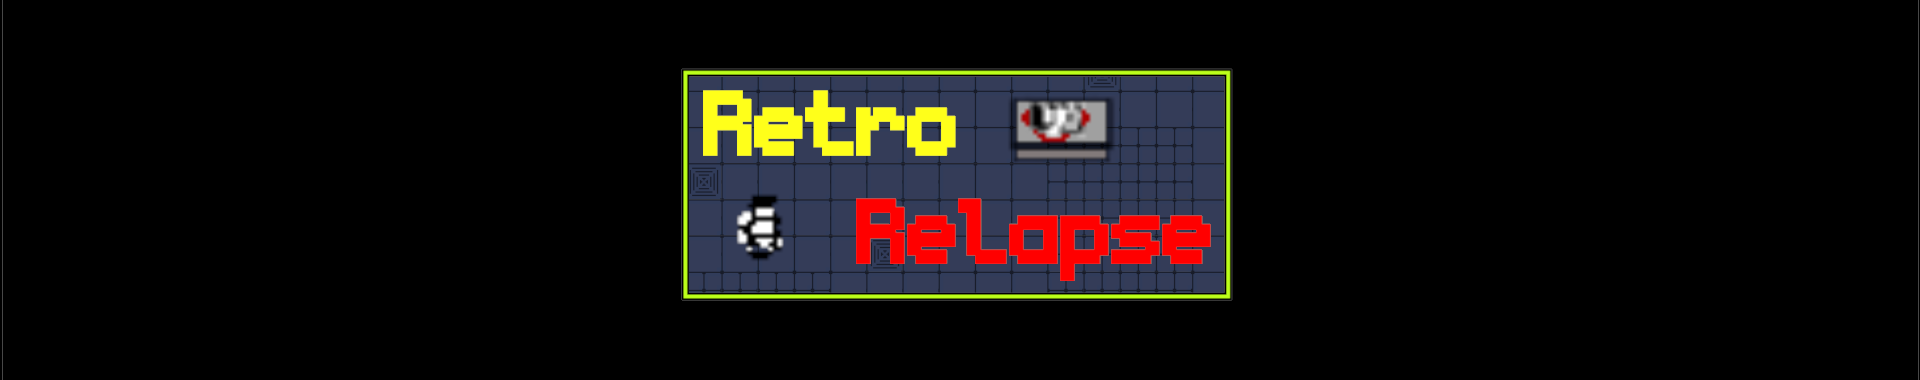 Retro Relapse